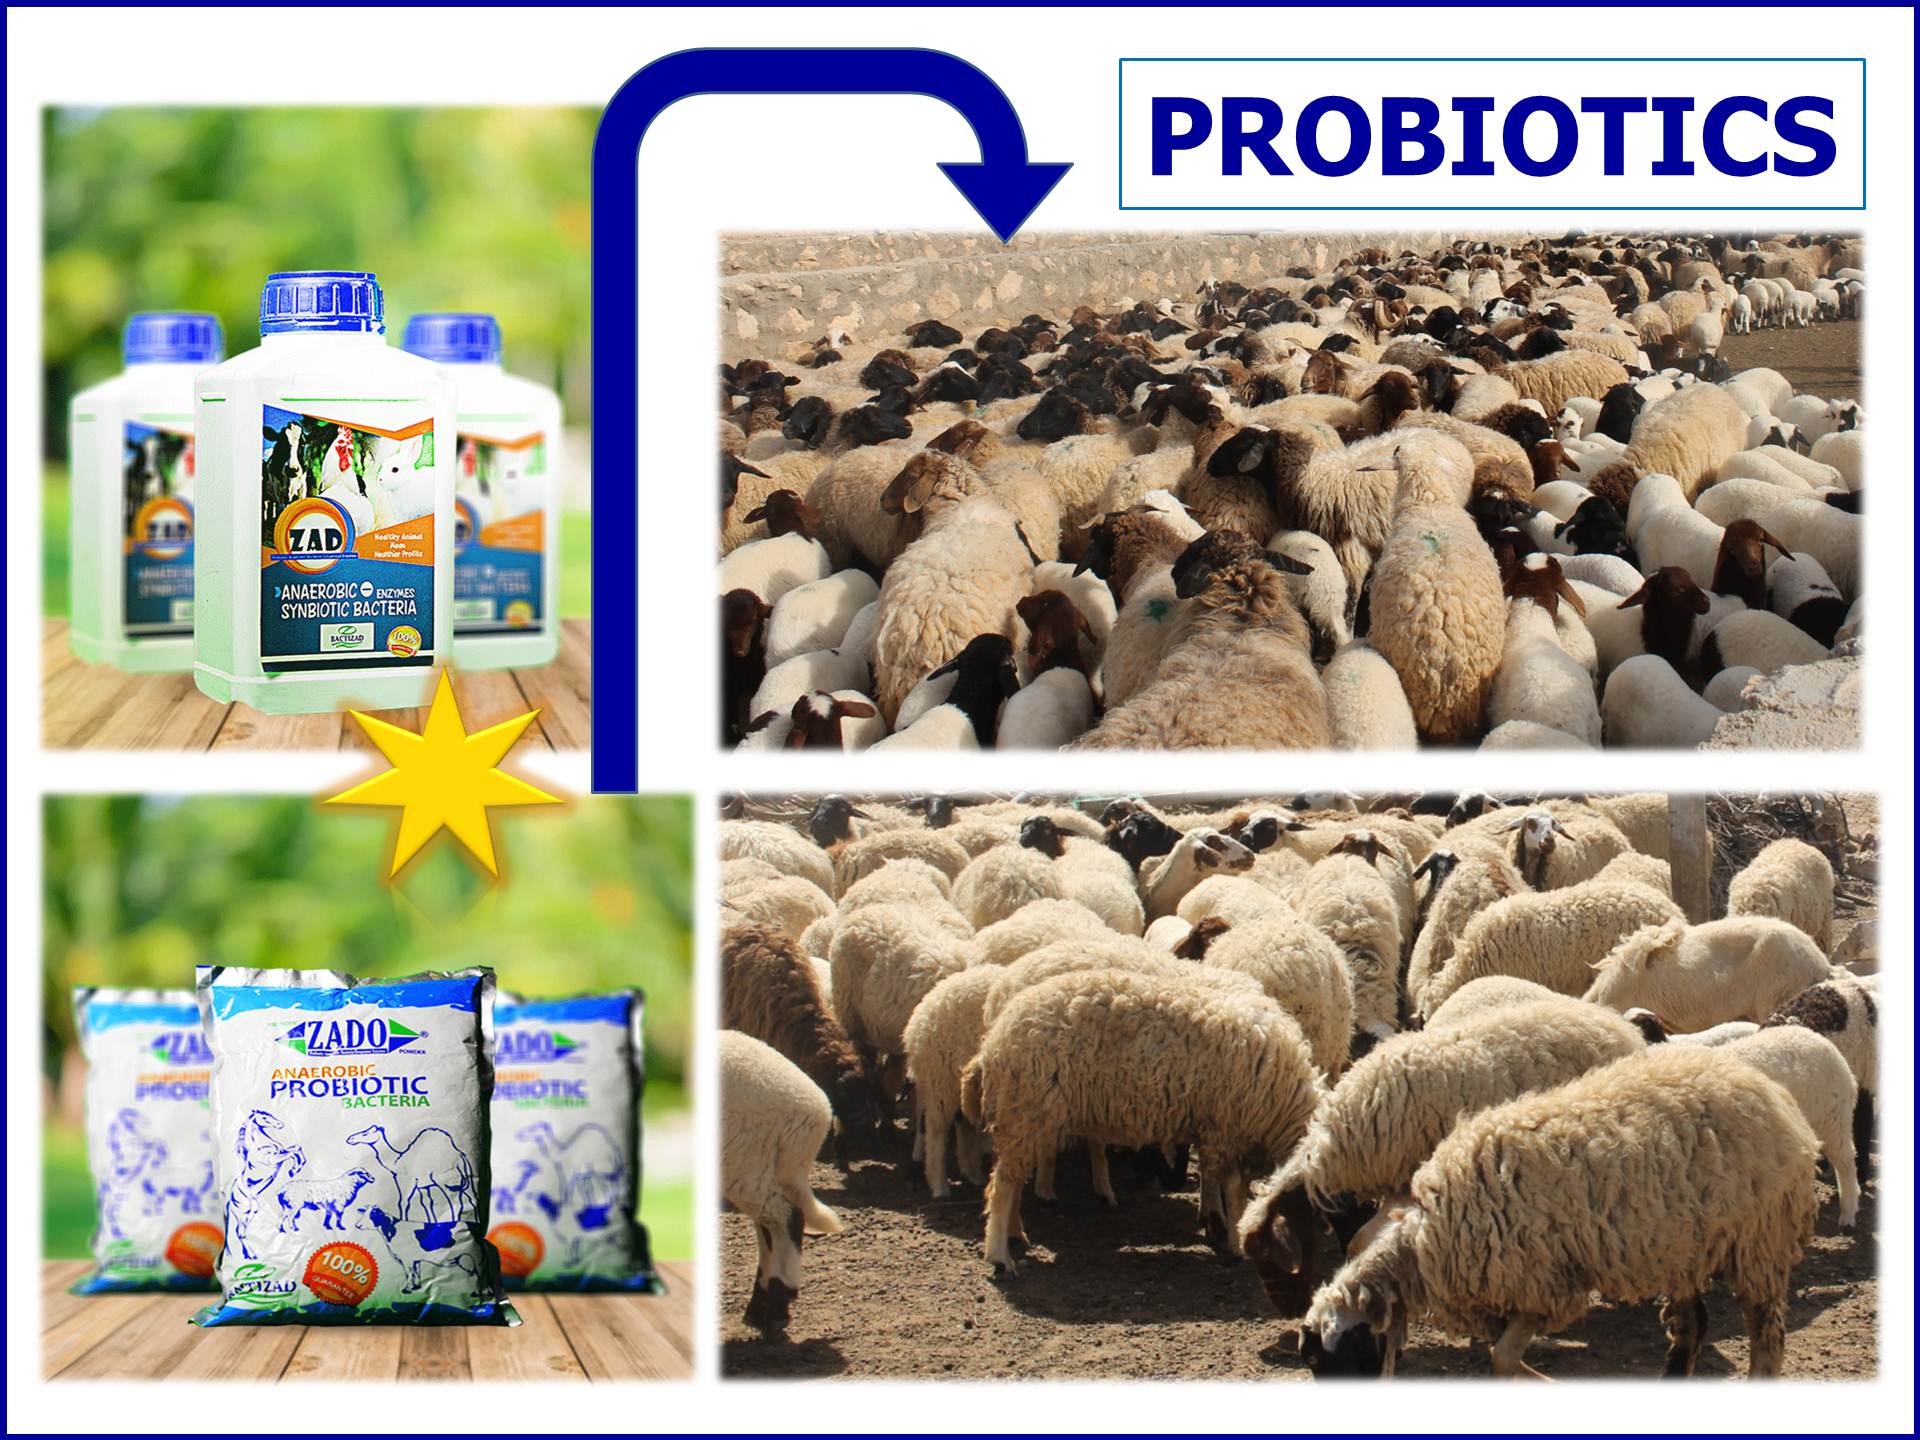 WVJ_1123_Probiotics